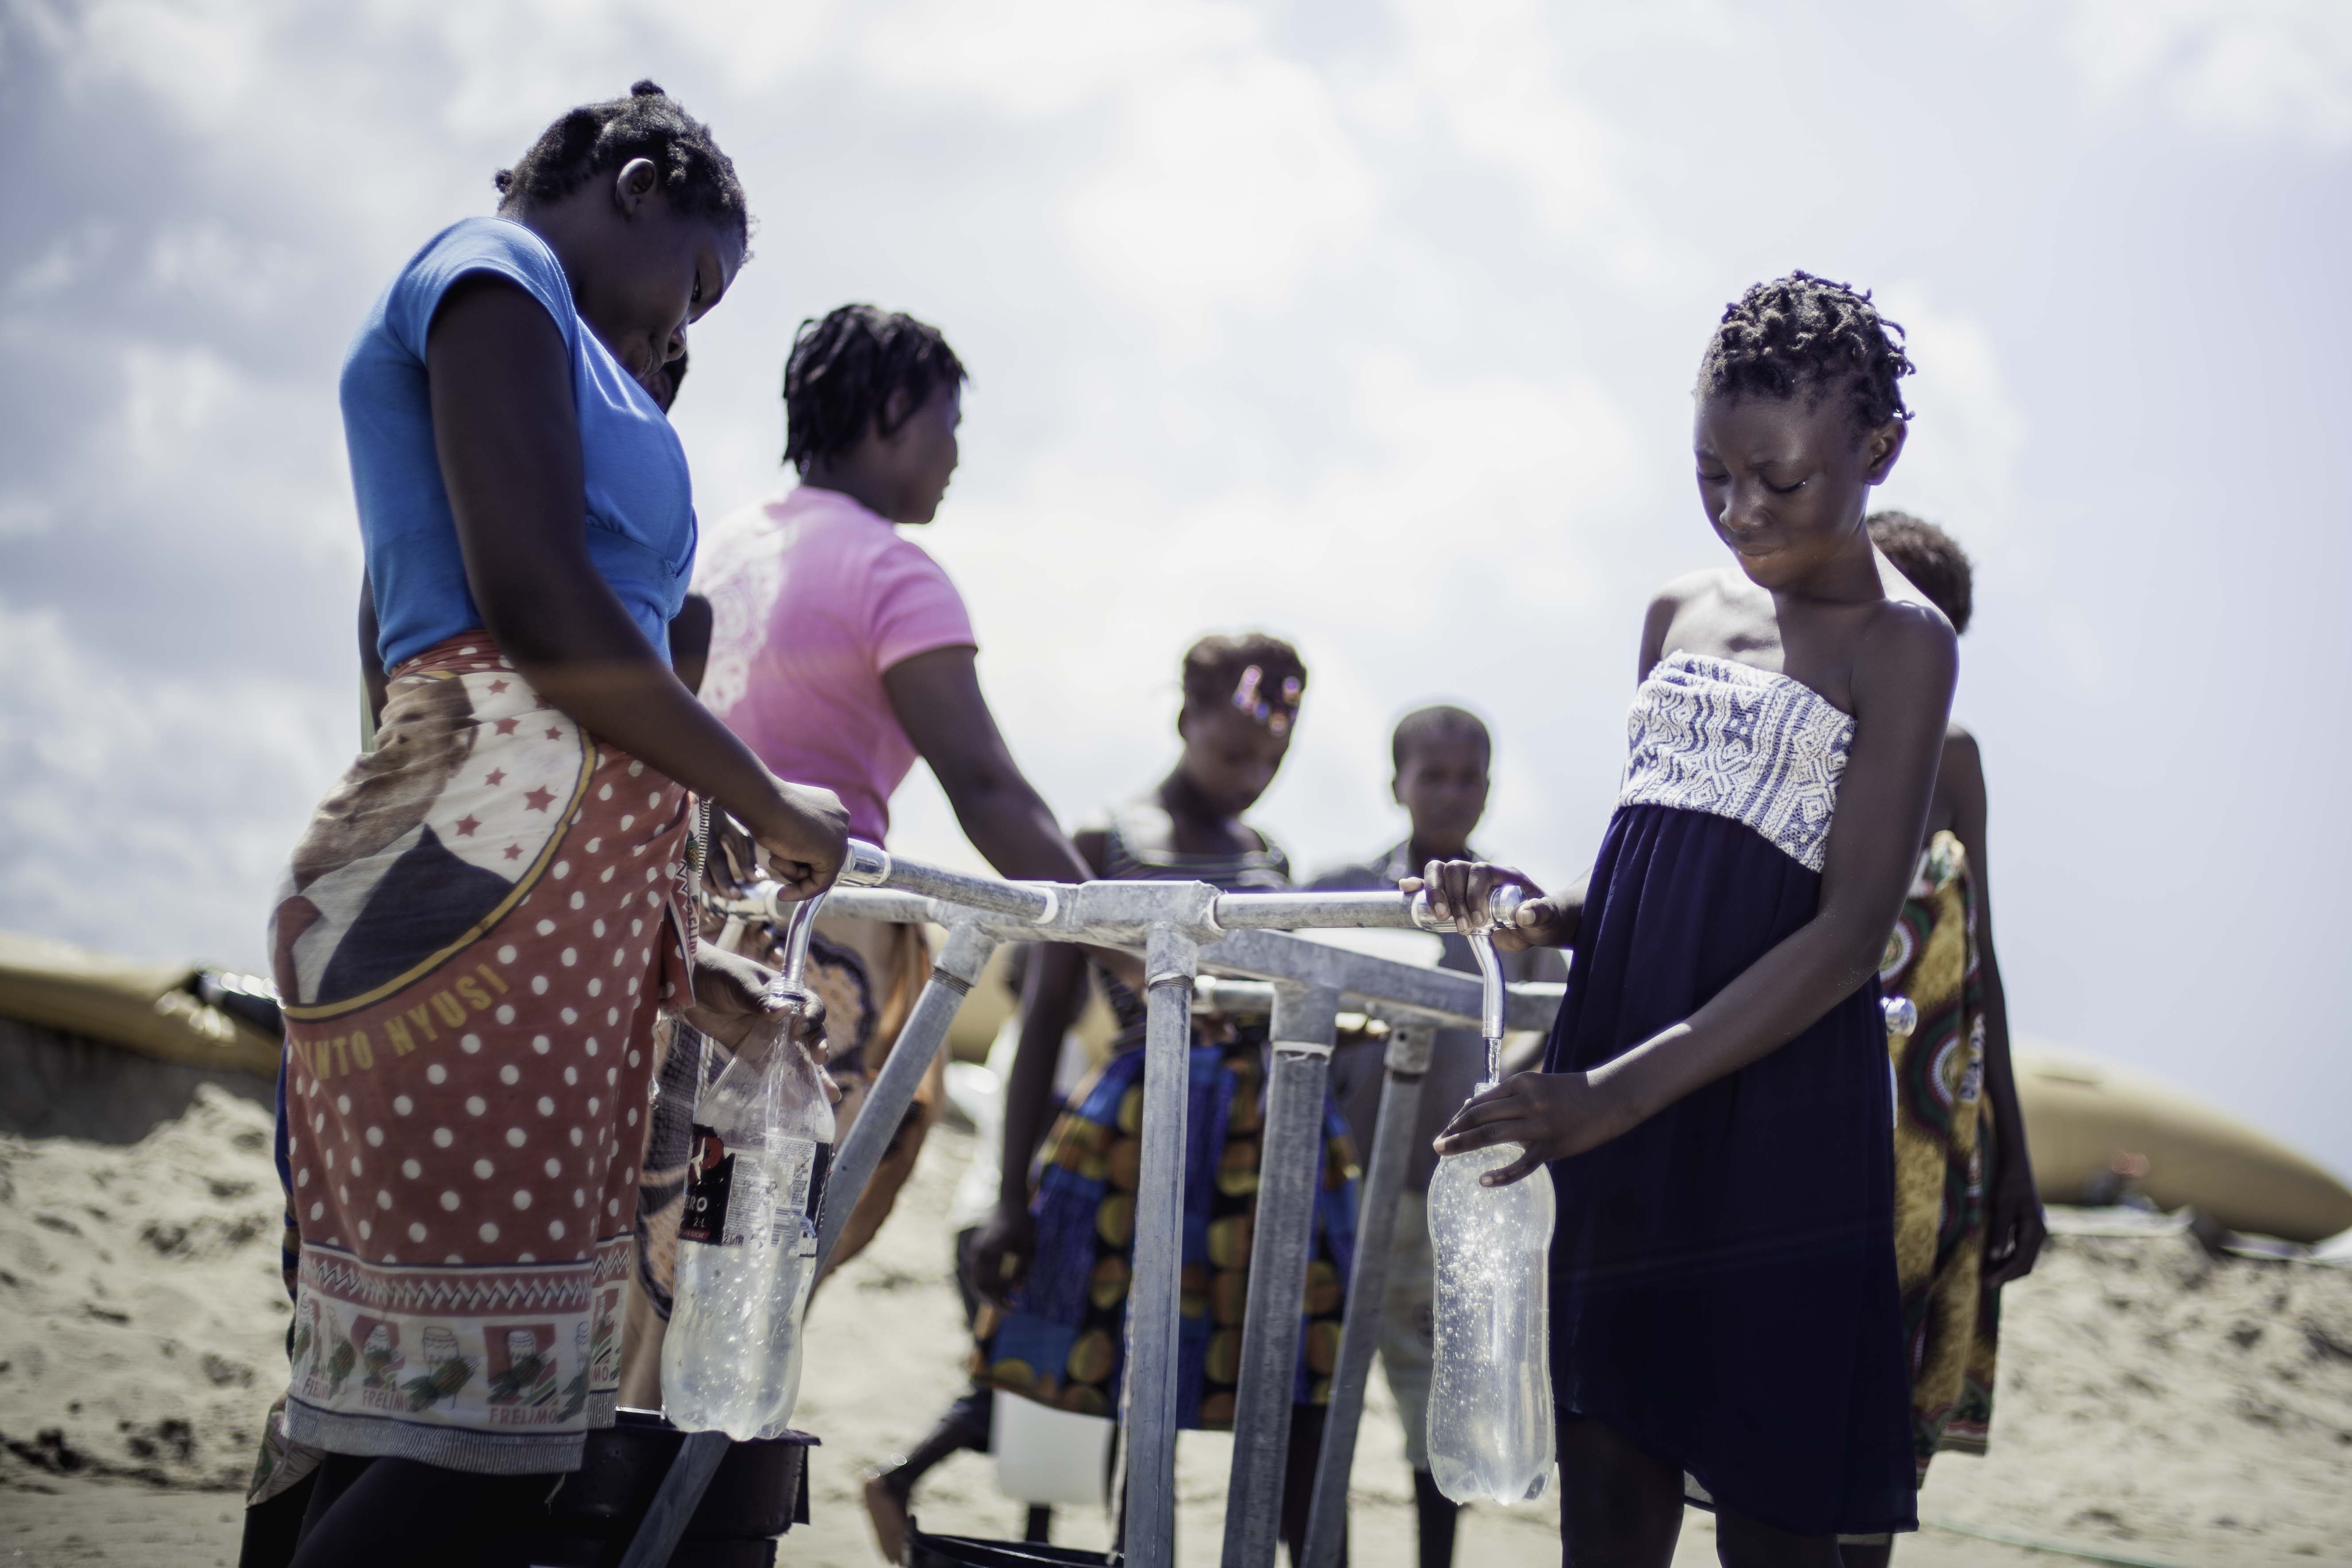 14歲的Teresa Jone Vilanculos（右）從水龍頭取水，注滿自己的瓶子。 Teresa和她的家人原本居住在莫桑比克的Mangalaforte。因為房子被「伊代」摧毀，她全家被迫要逃往臨時庇護中心暫住。（攝影： Micas Mondlane / 荷蘭樂施會）